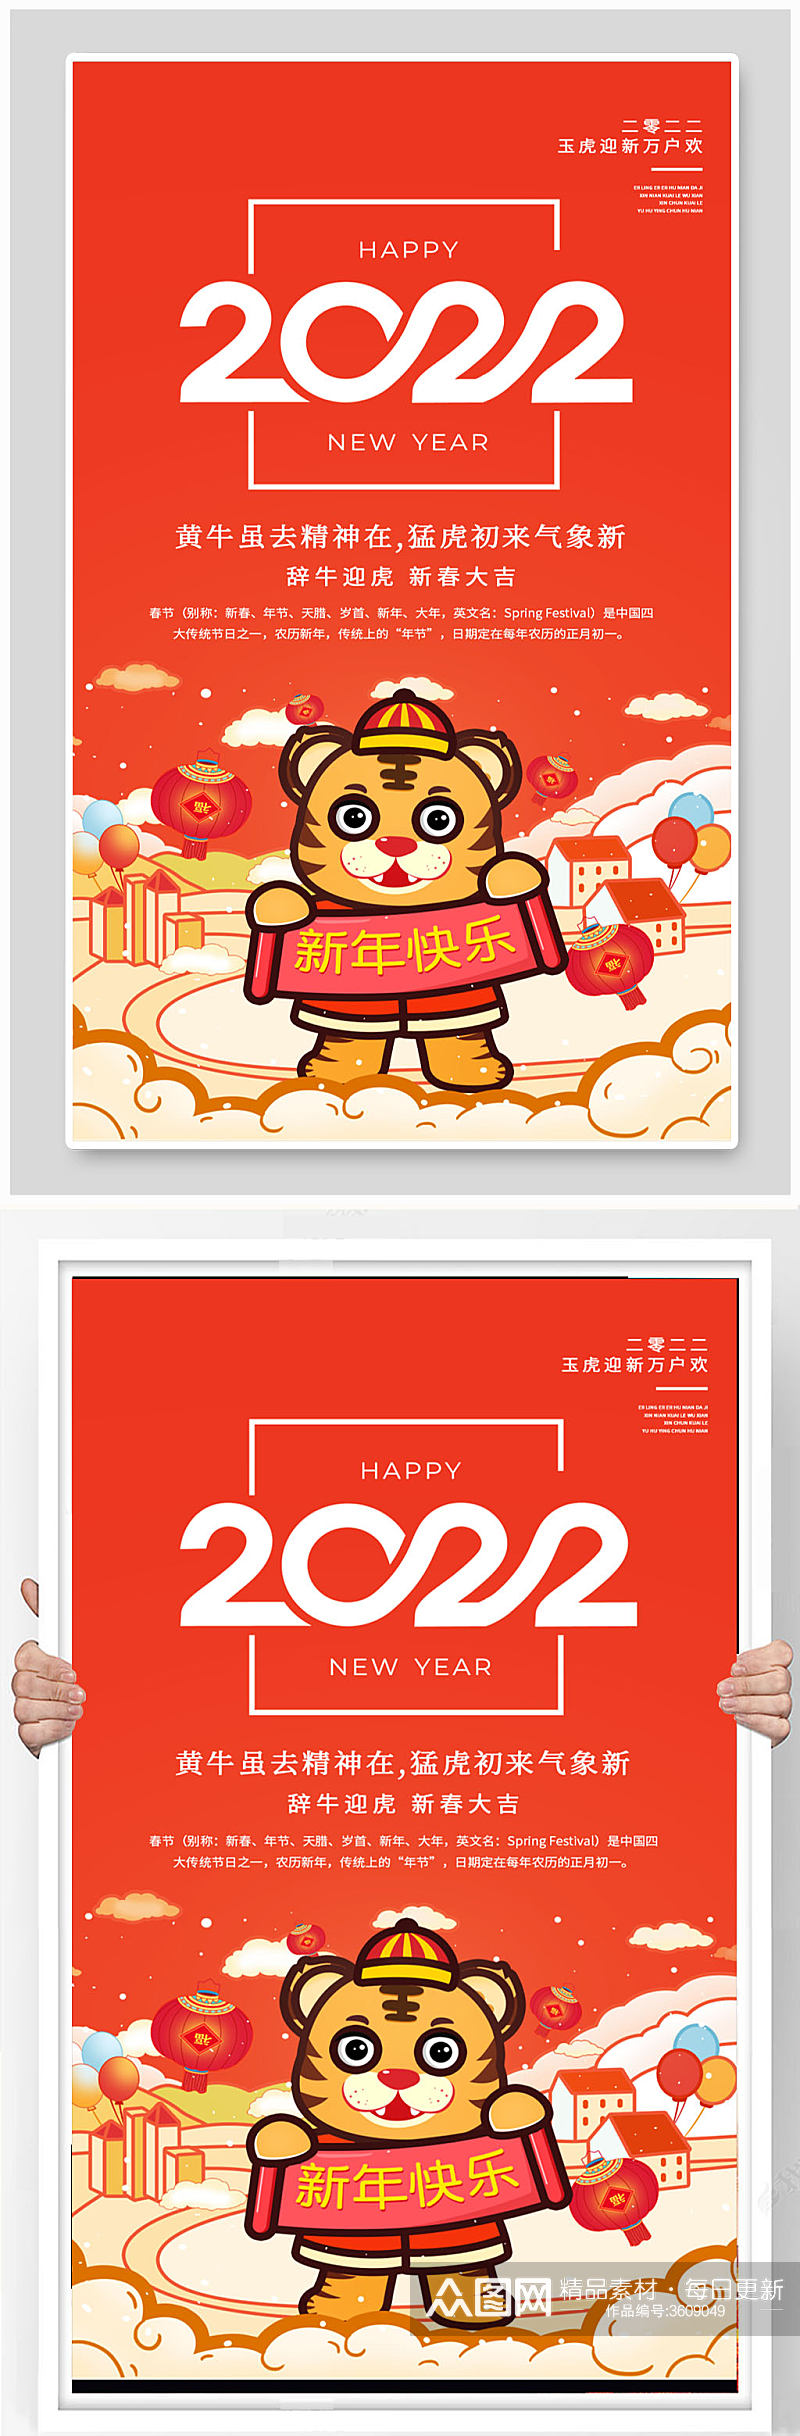 简约插画风2022虎年春节宣传海报素材